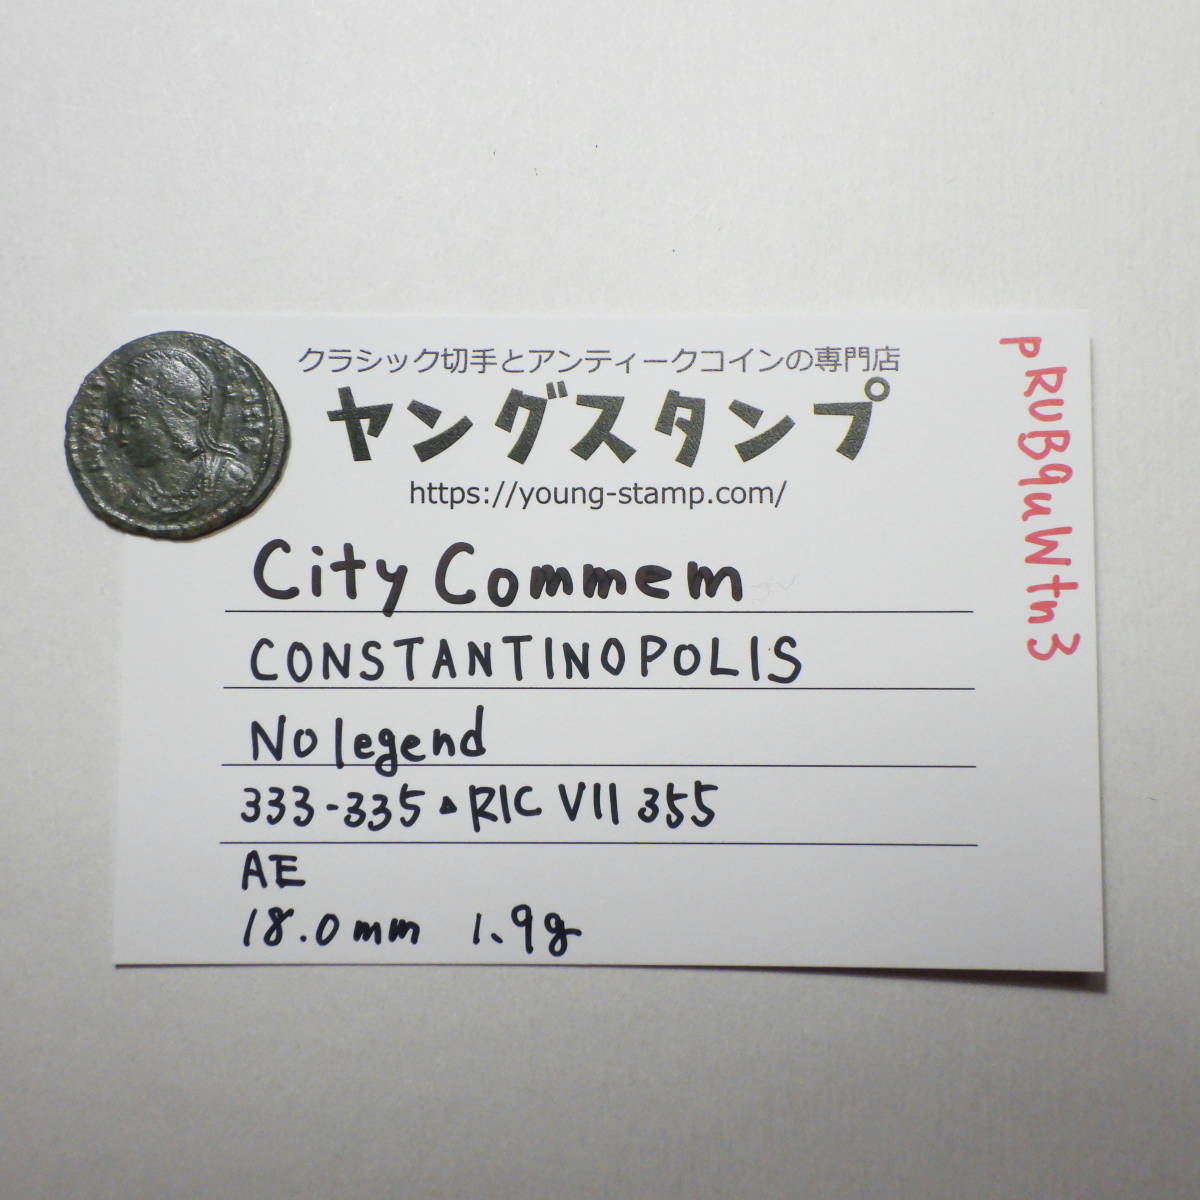 【古代ローマコイン】City Commem（コンスタンティノポリス記念）クリーニング済 ブロンズコイン 銅貨(pRUB9uWtn3)_画像10